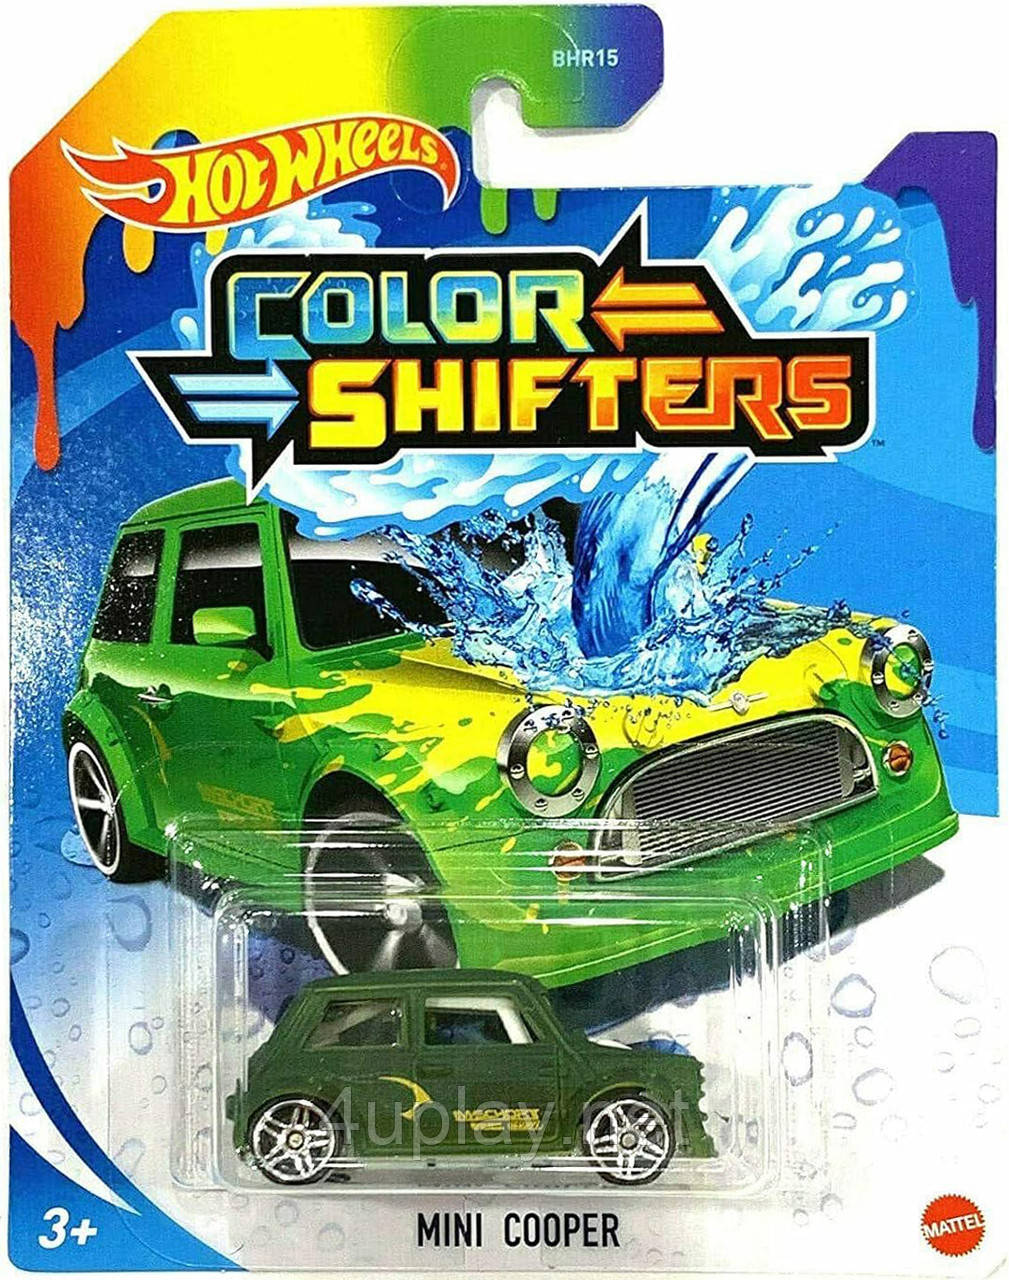 Hot Wheels Color Shifters Mini Cooper Машинка Хот Вілс, що змінює колір, Міні Купер